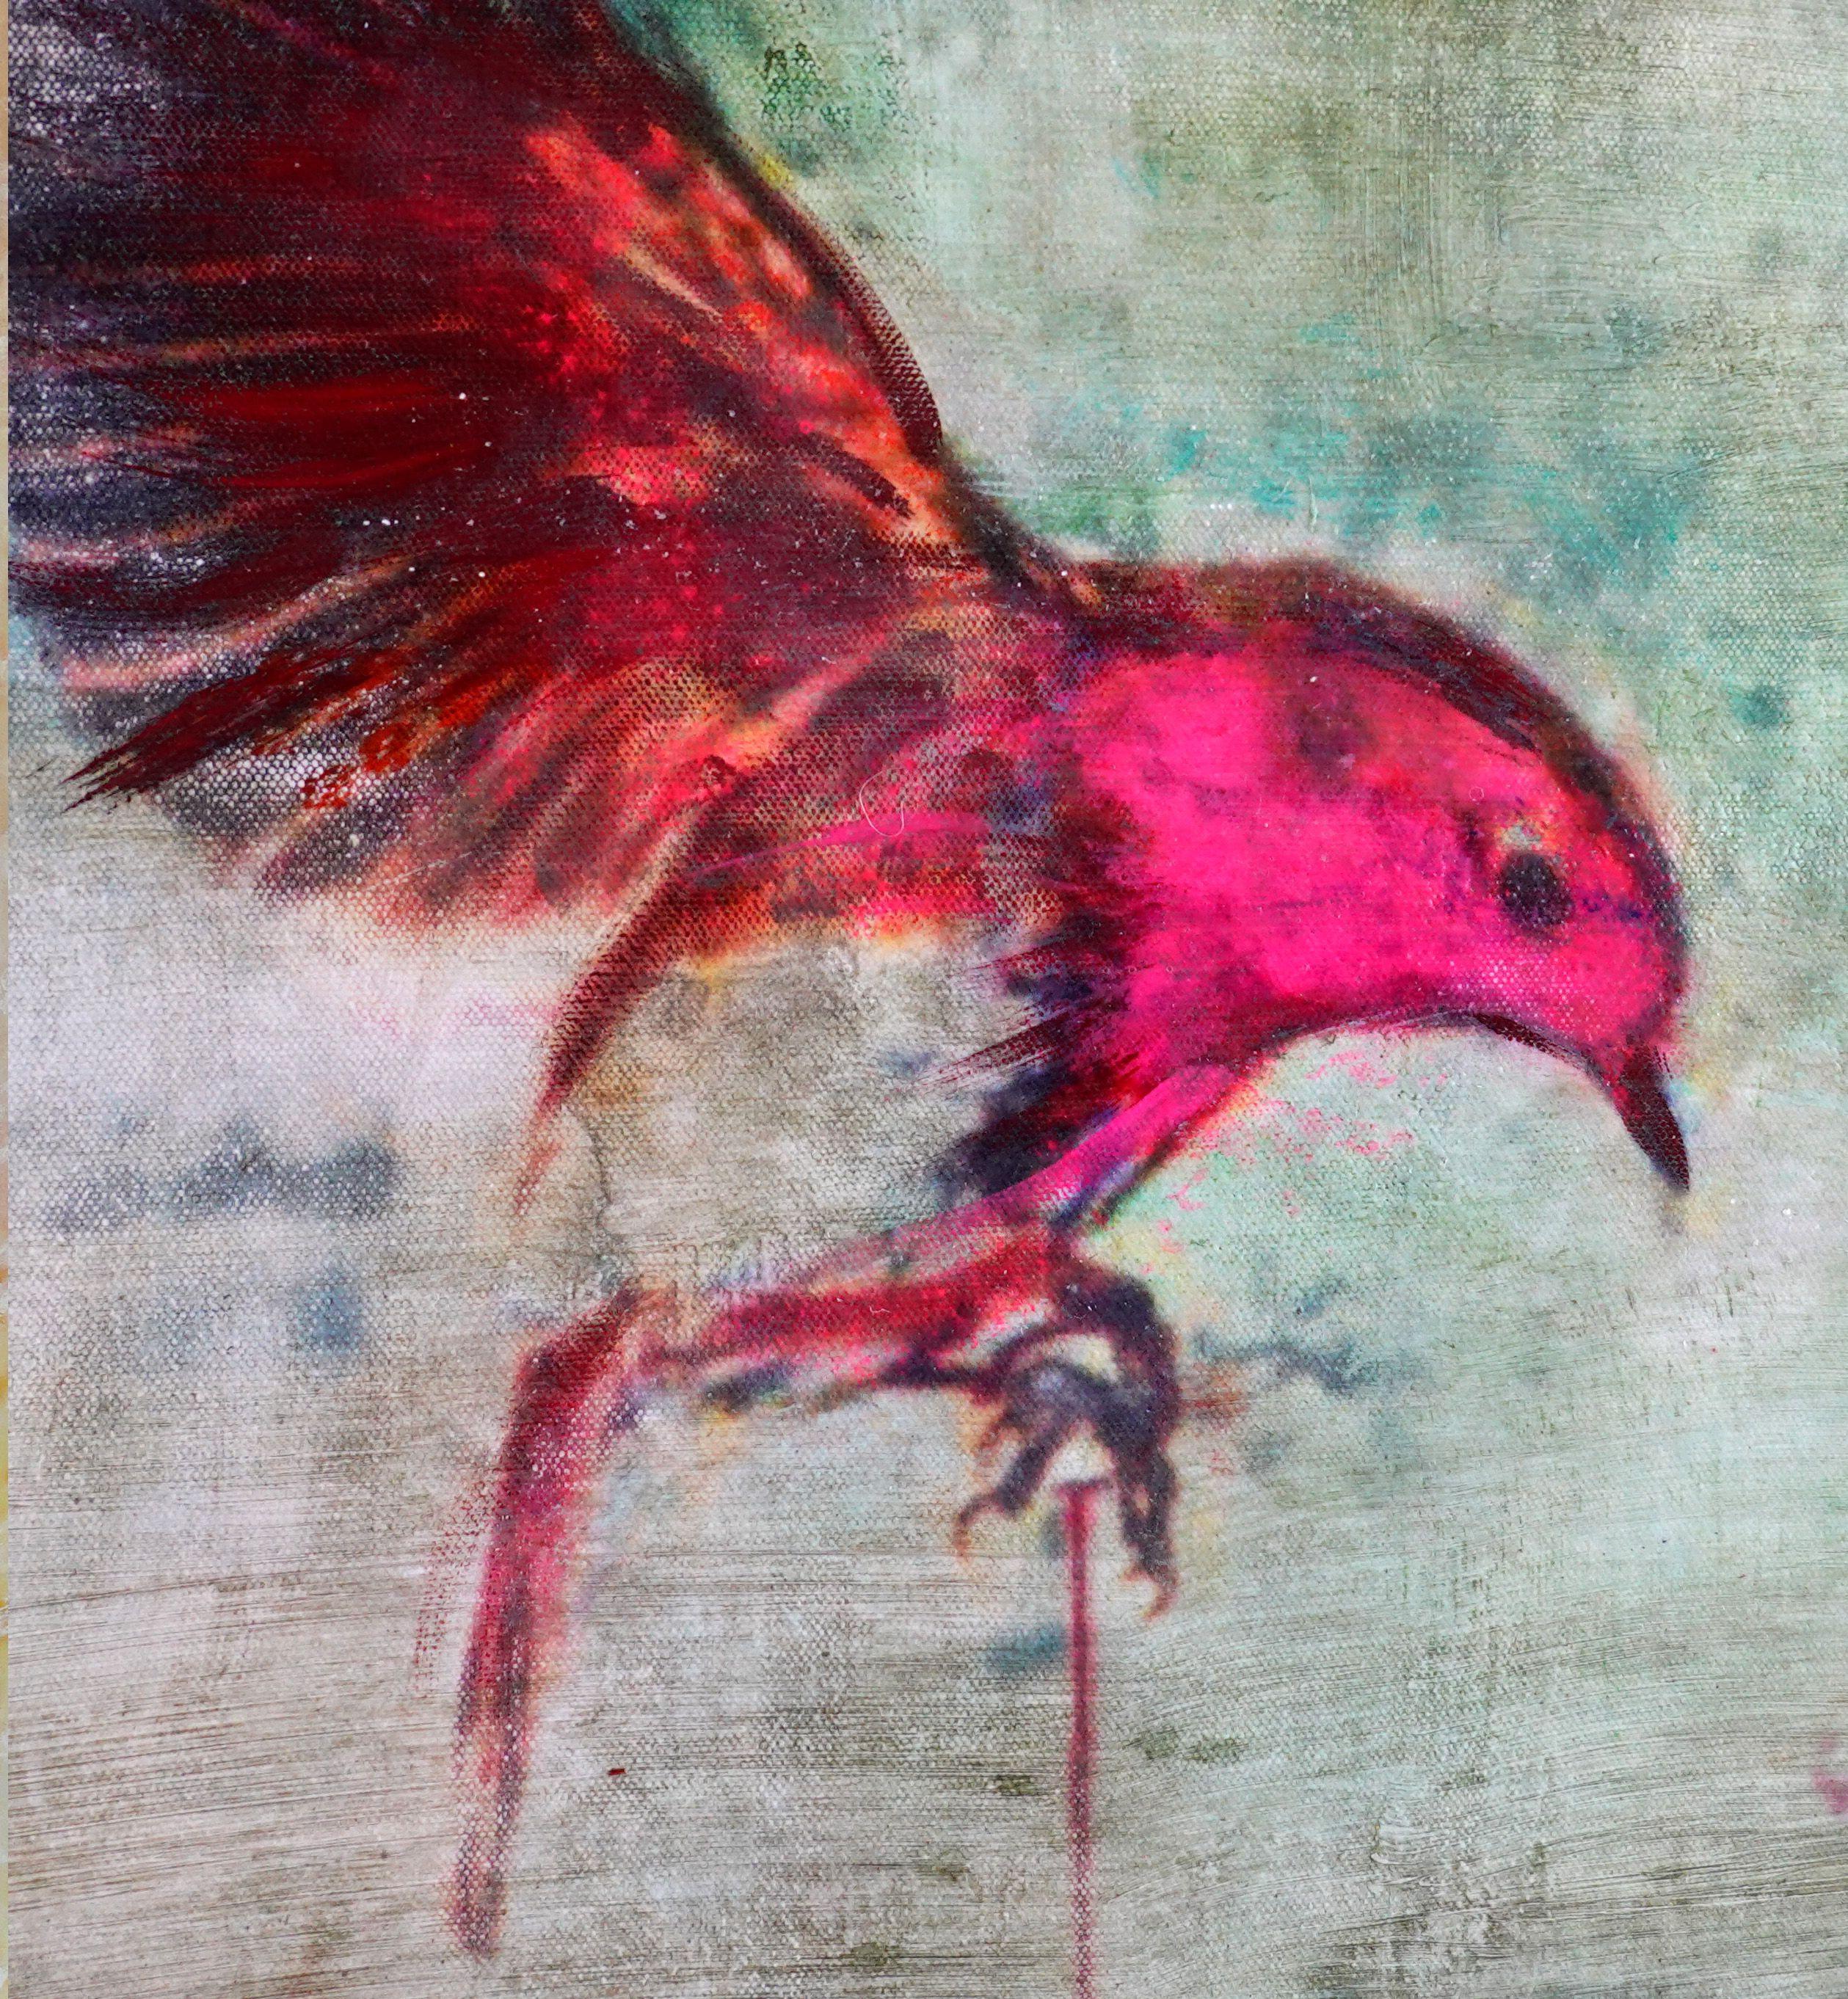 Swing XXIV  Abstract surreal bird  nesting, Mixed Media on Canvas - Surrealist Mixed Media Art by Sia Aryai